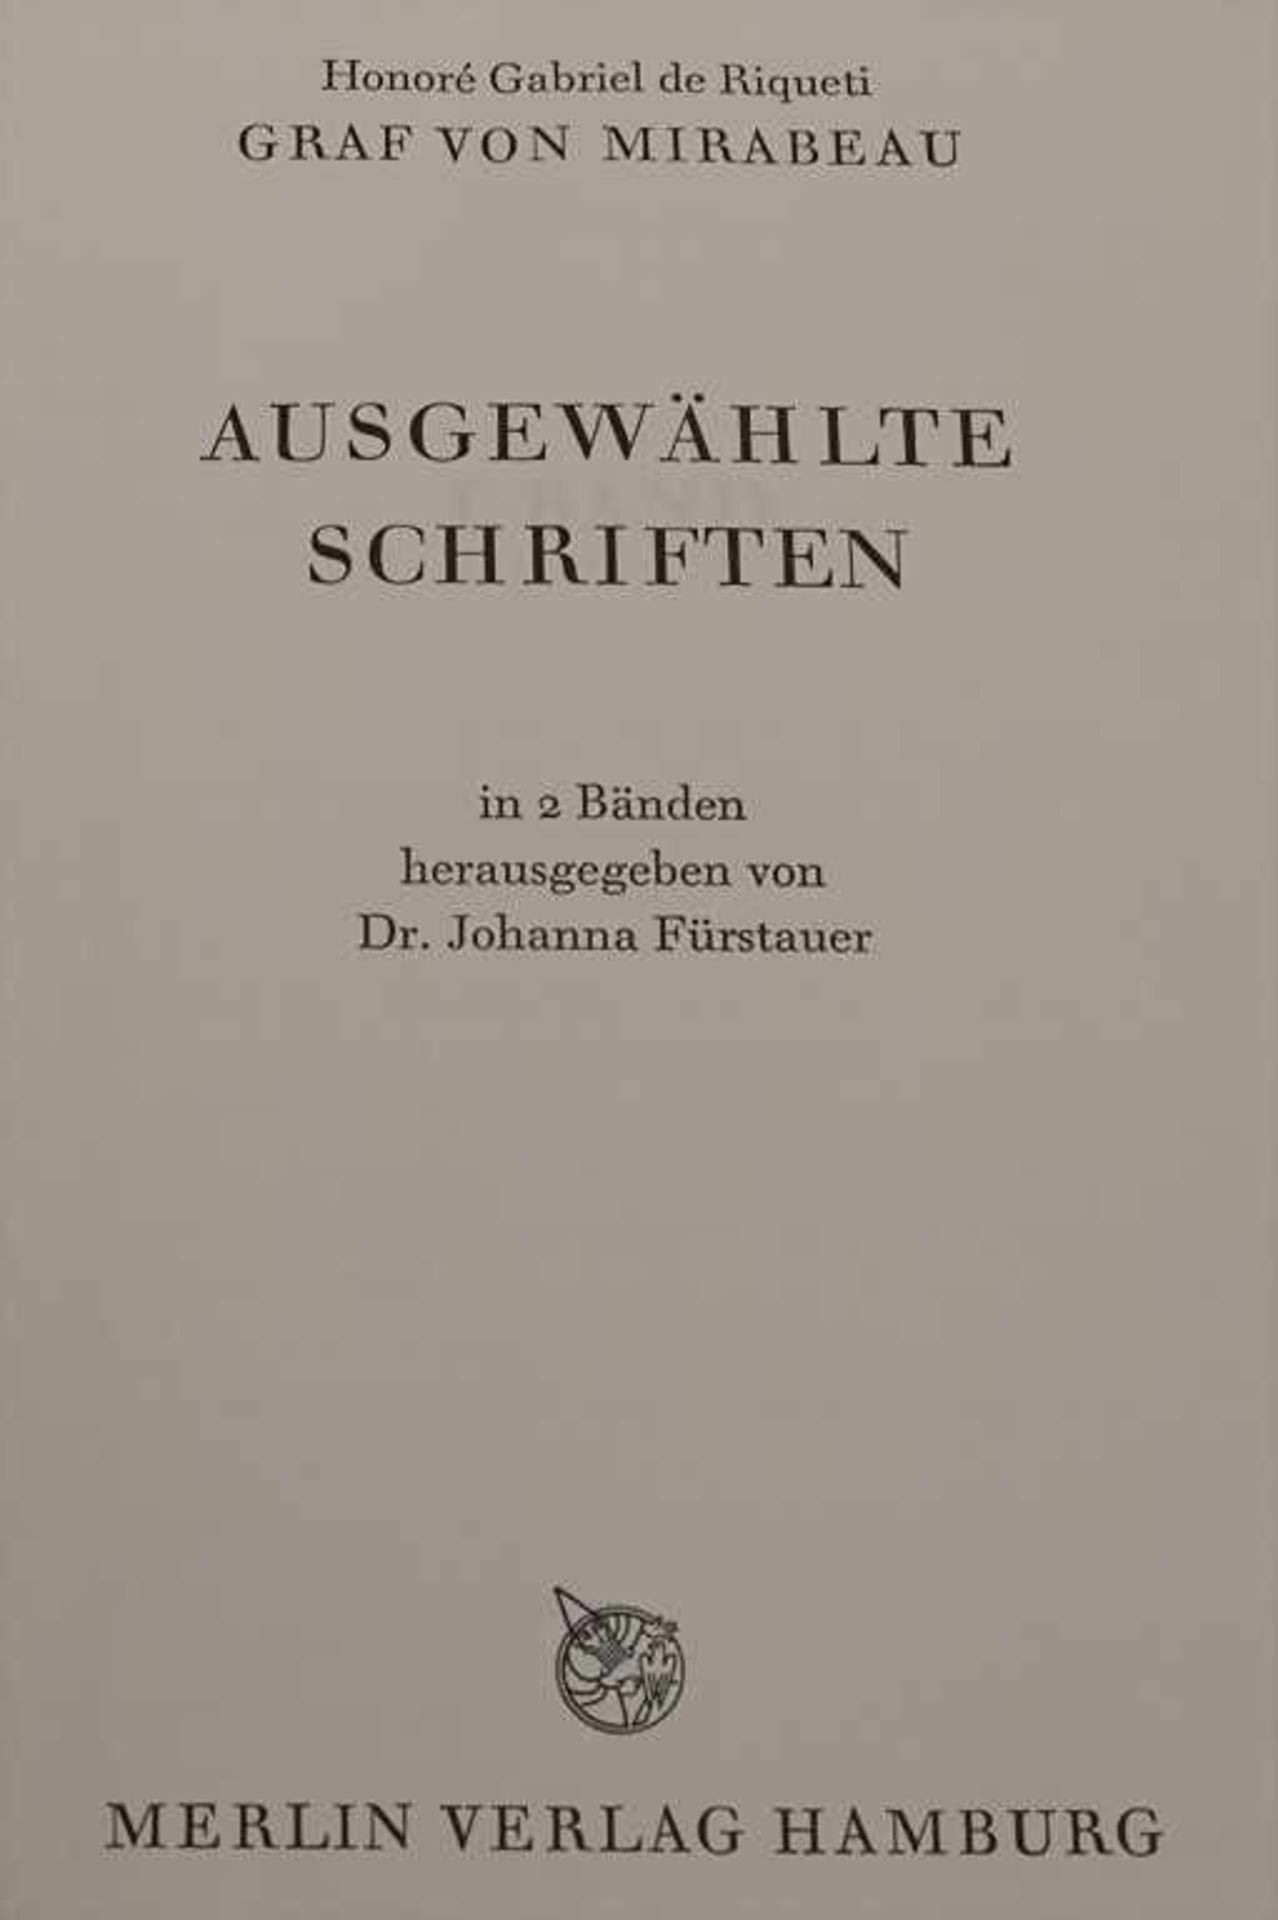 Graf von Mirabeau, Gabriel: Ausgewählte SchriftenTitel: Ausgewählte Schriften,Umfang: 2 Bde., - Image 2 of 9